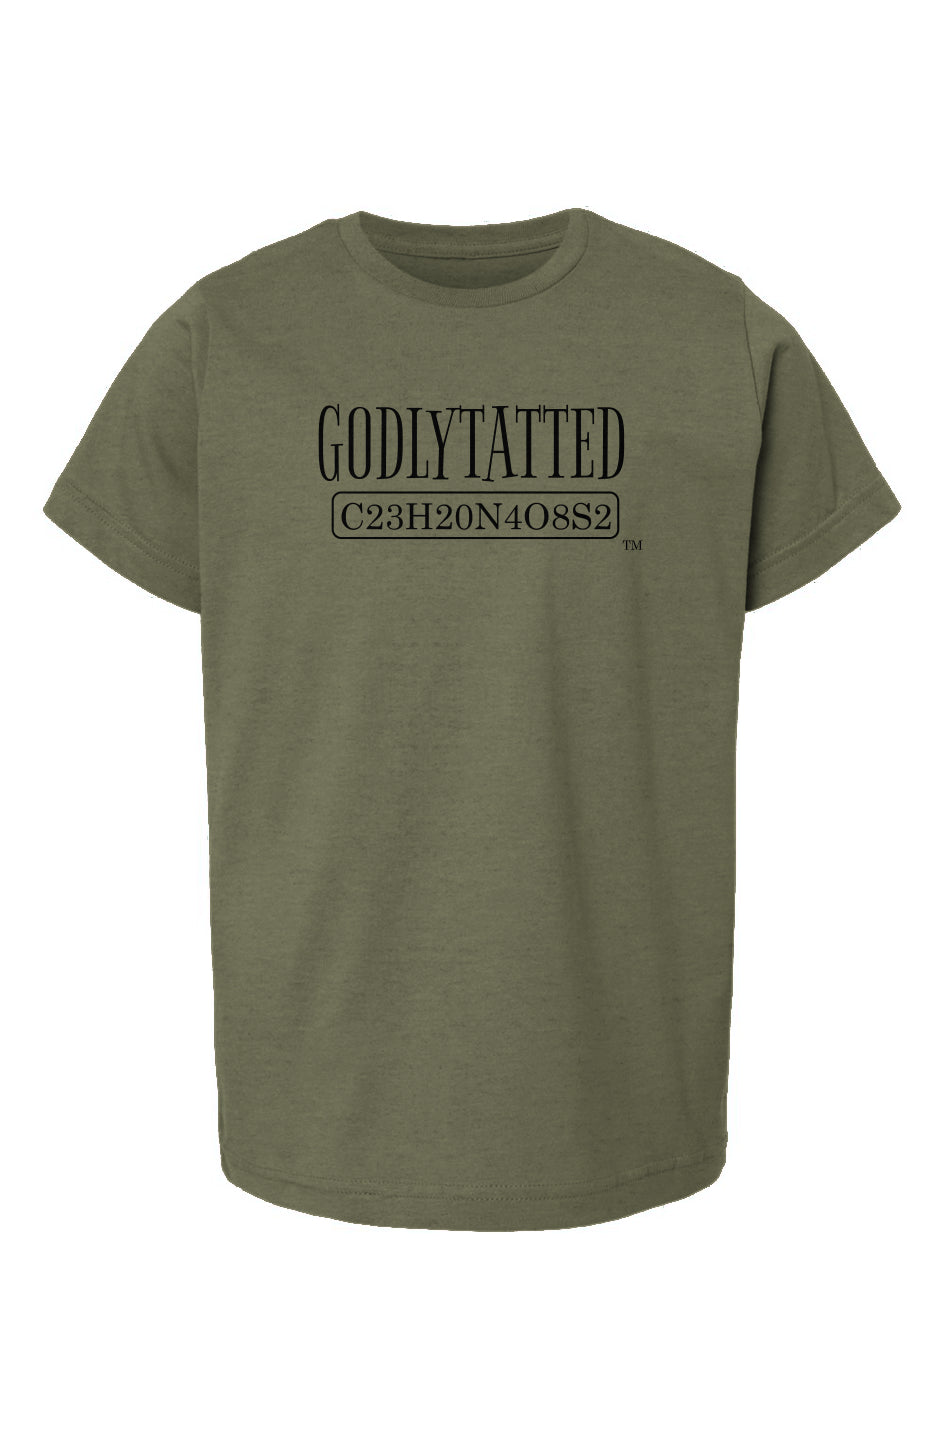 godlytatted - kids - Military Green - Black logo